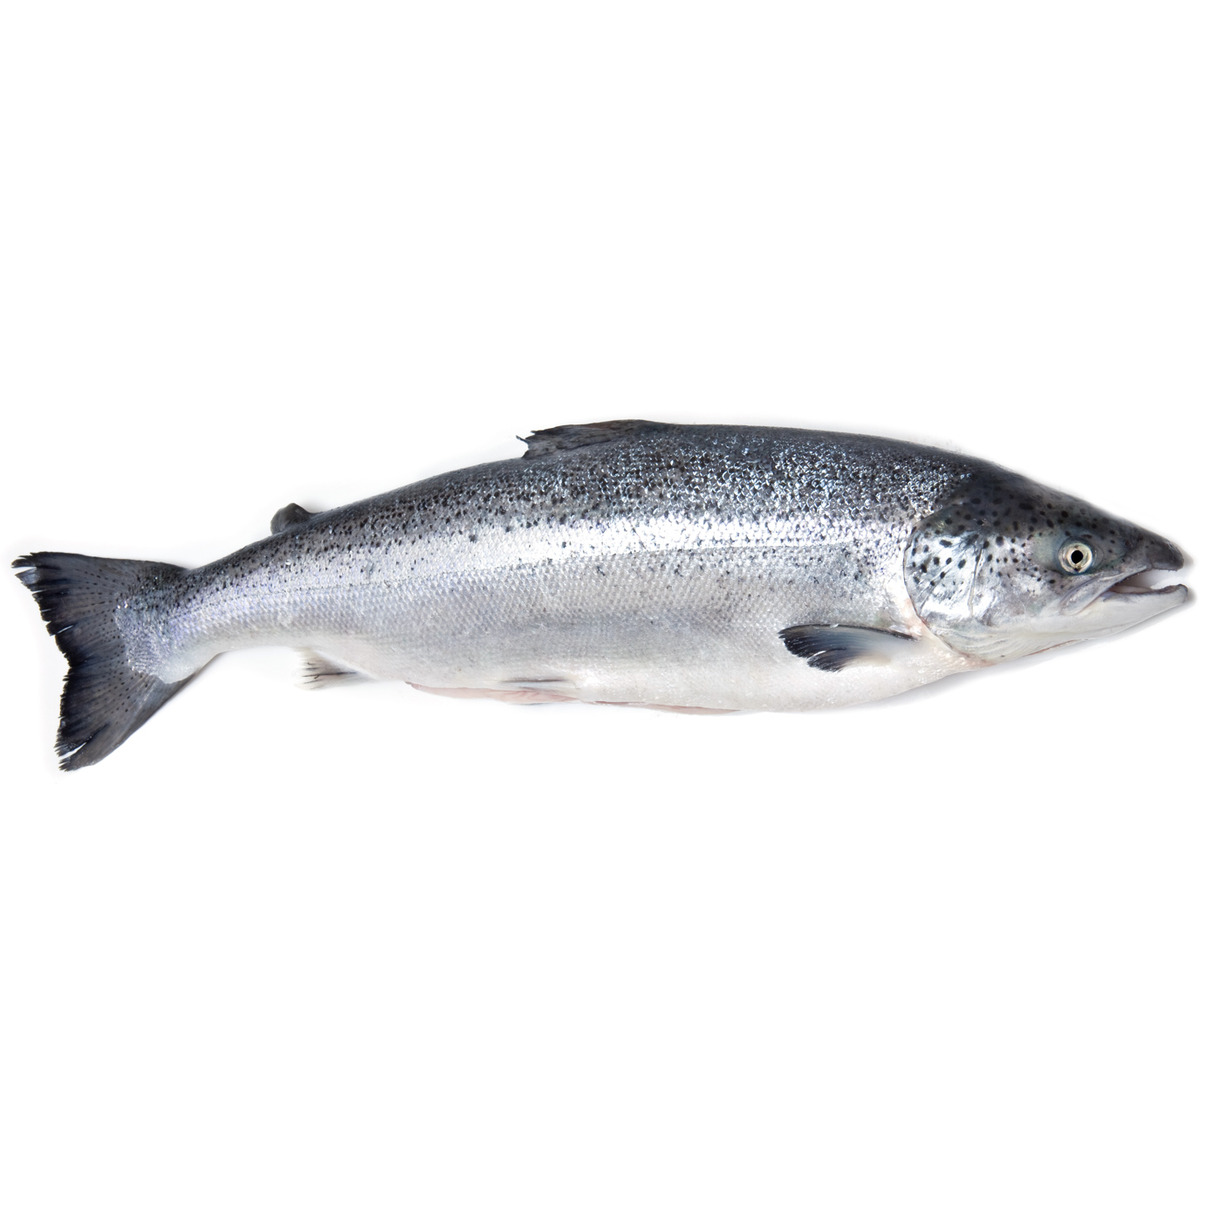 Океаническая форель вылов Норвегия
Высококачественная рыба, доступная в целом виде и замороженная для сохранения свежести. Каждая рыба имеет вес примерно от 5 до 6 килограммов, что делает ее идеальным выбором для приготовления вкусных и диетически полезных блюд.

Атлантическая Форель обладает нежным и сочным мясом с легким и нежным вкусом, который подвергается множеству кулинарных приемов. При заказе форели, вам предоставляется возможность выбрать между целой рыбой или нарезанными стейками. Нарезанная рыба поставляется с головой и суповым набором, что позволяет вам полностью насладиться всеми ее преимуществами и использовать ее в различных рецептах. Из головы Вы можете сделать идеальный бульон для супов и соусов, а стейки готовить любымым вам способом.
Форель заморожена для сохранения свежести и качества продукта. Чтобы сохранить все вкусовые качества и питательные свойства, мы рекомендуем хранить ее в морозильной камере.
Океаническая форель вылова Норвегии - это идеальный выбор для тех, кто ищет высококачественную рыбу с нежным мясом и вкусом. Она подойдет как для повседневных блюд, так и для особых мероприятий. Приготовьте вкусные блюда с форелью и порадуйте себя и своих гостей неповторимыми вкусовыми впечатлениями.
В продаже целая рыба весом 5 - 6 килограмм.